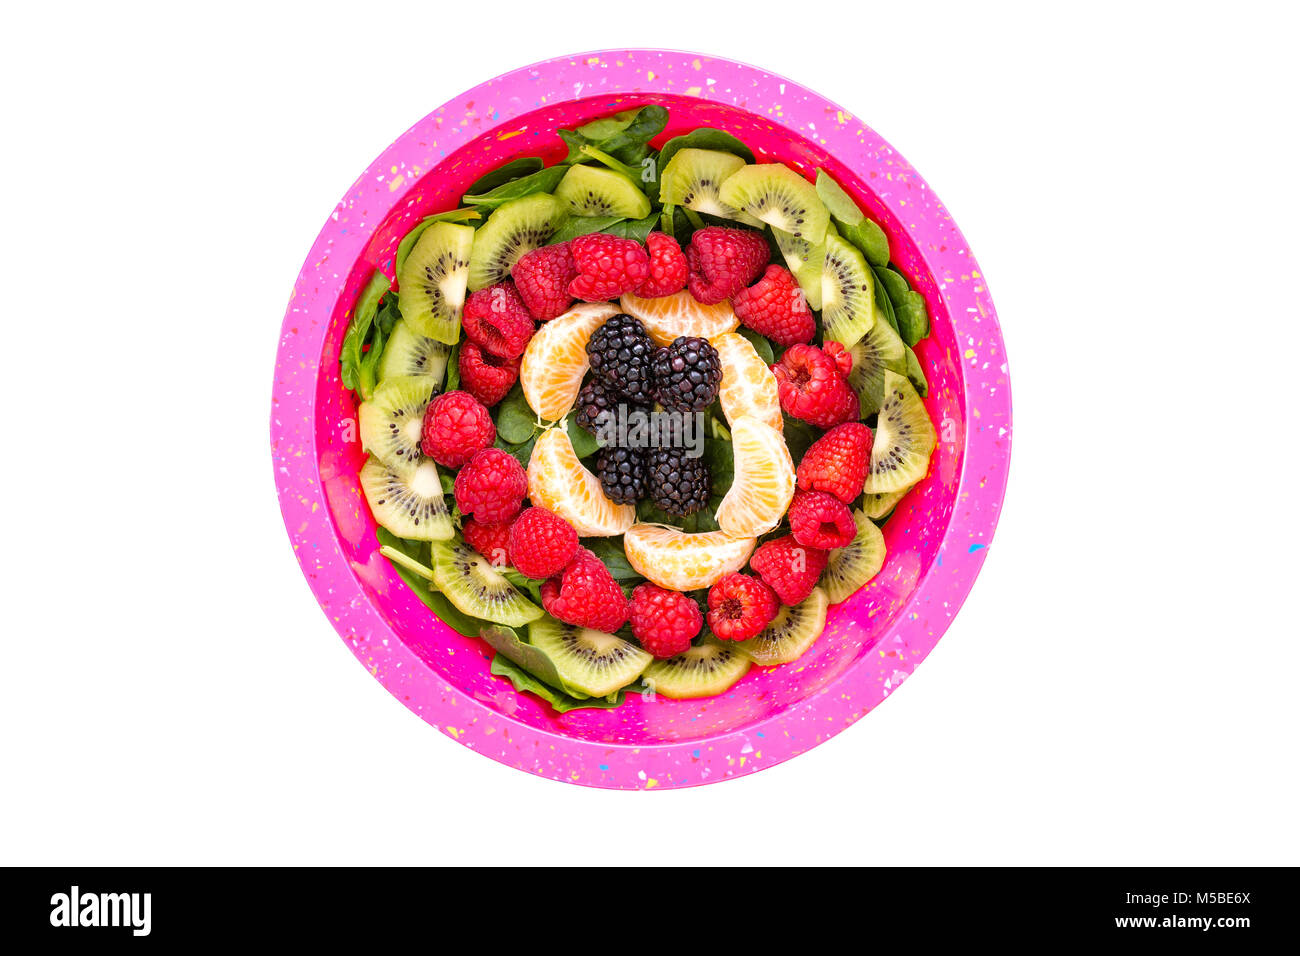 Ensalada de espinacas bebé rematado con fruta fresca perfectamente dispuestas en círculos concéntricos visto desde arriba con kiwi, frambuesas, moras y segmentos Foto de stock